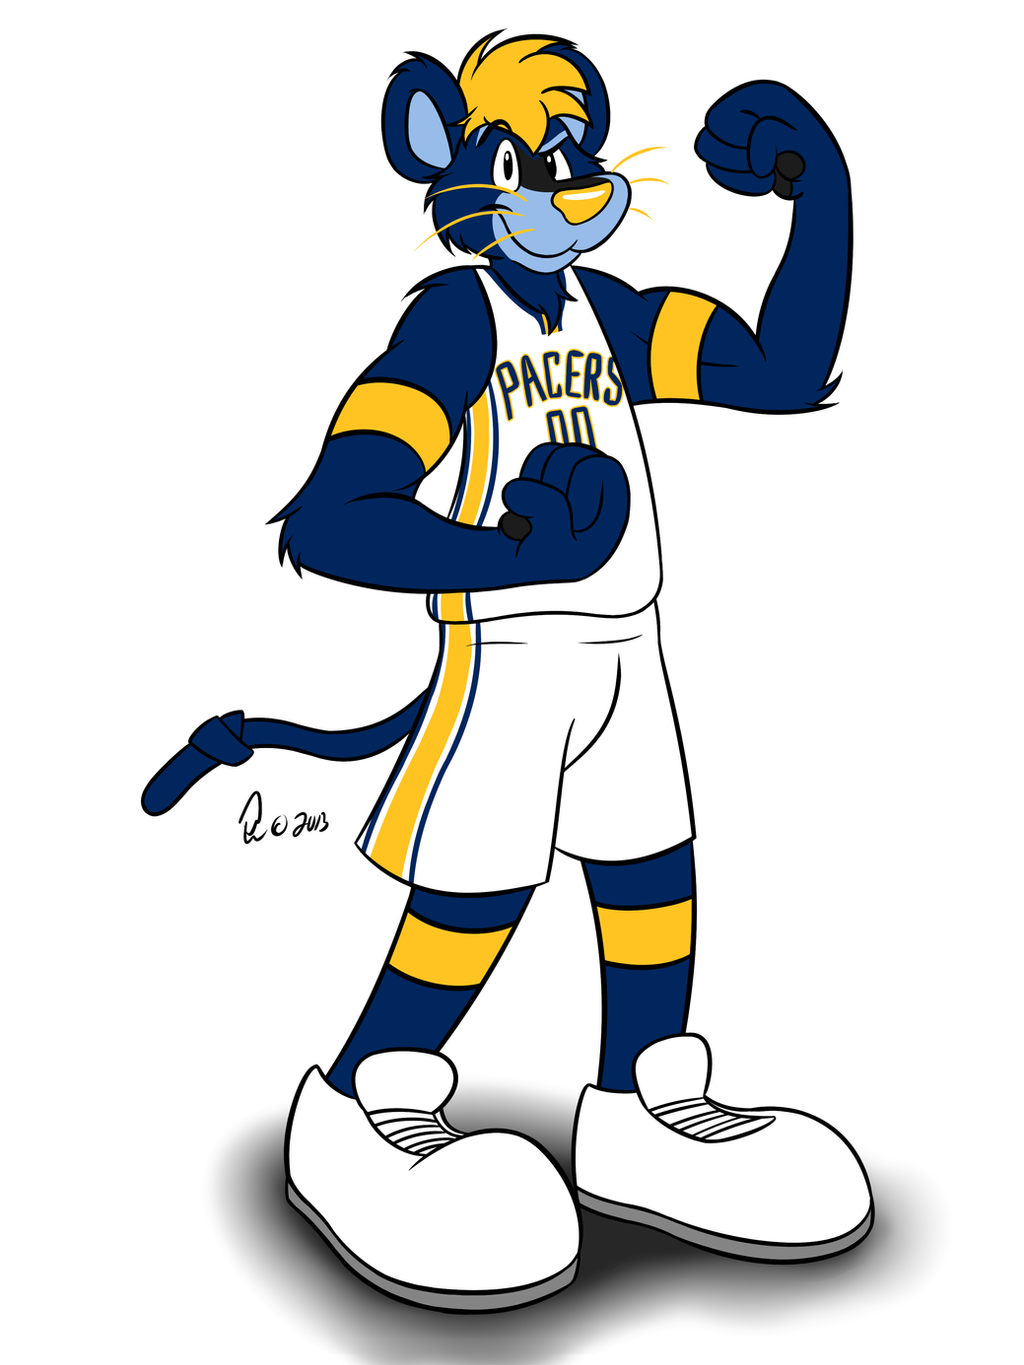 NBA Mascots - Boomer by Bleuxwolf on DeviantArt